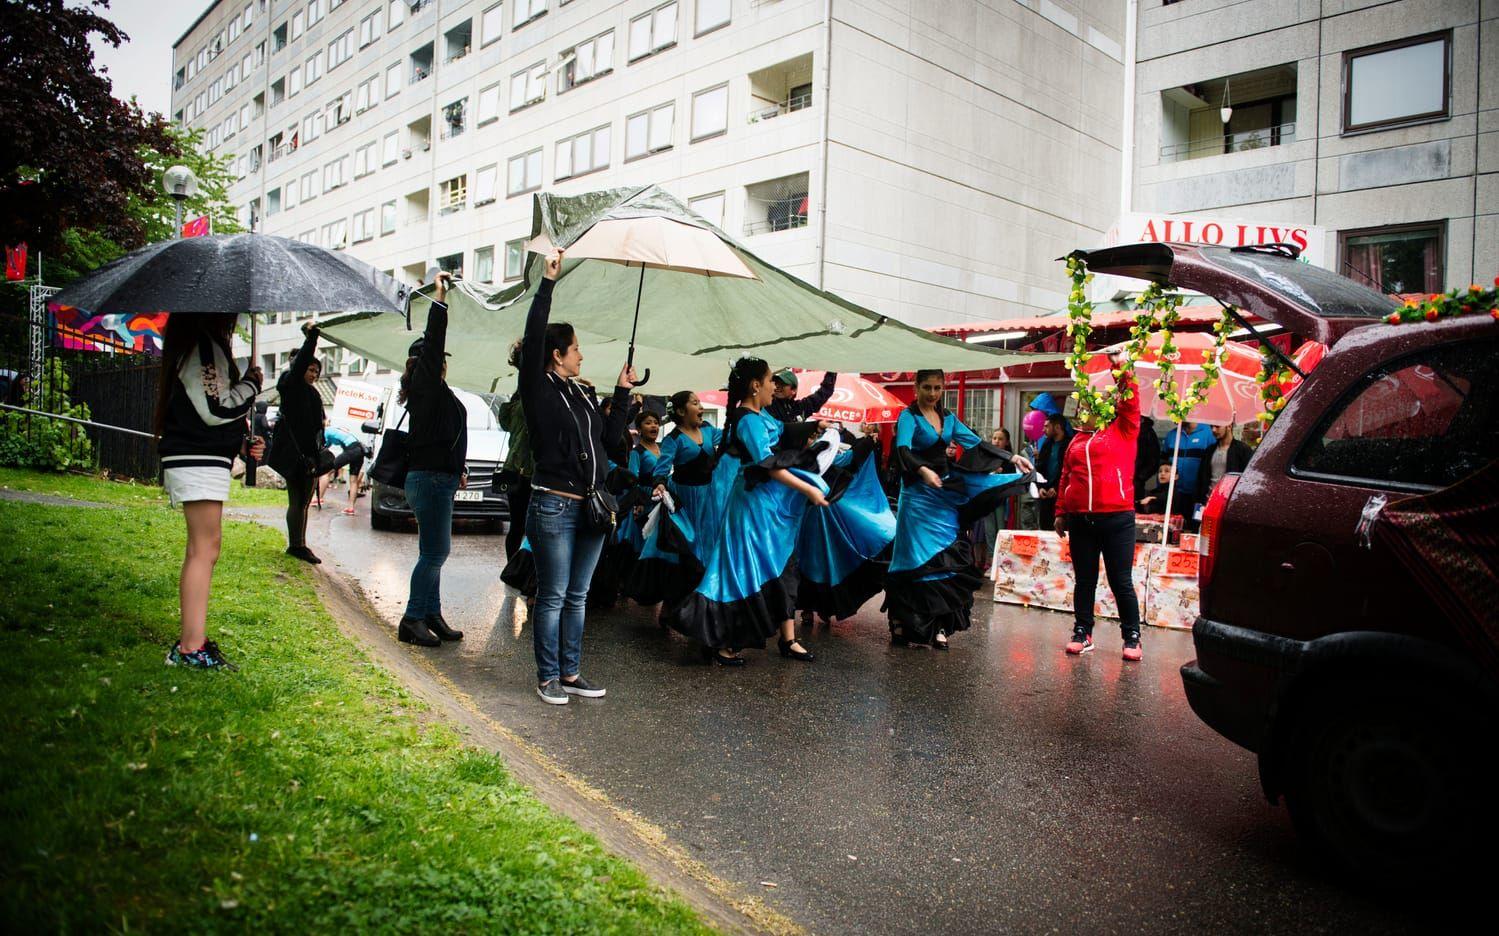 Den bolivianska dansföreningen Raymi tog skydd under en presenning, men dansen fortsatte. Bild: Jonas Lindstedt.